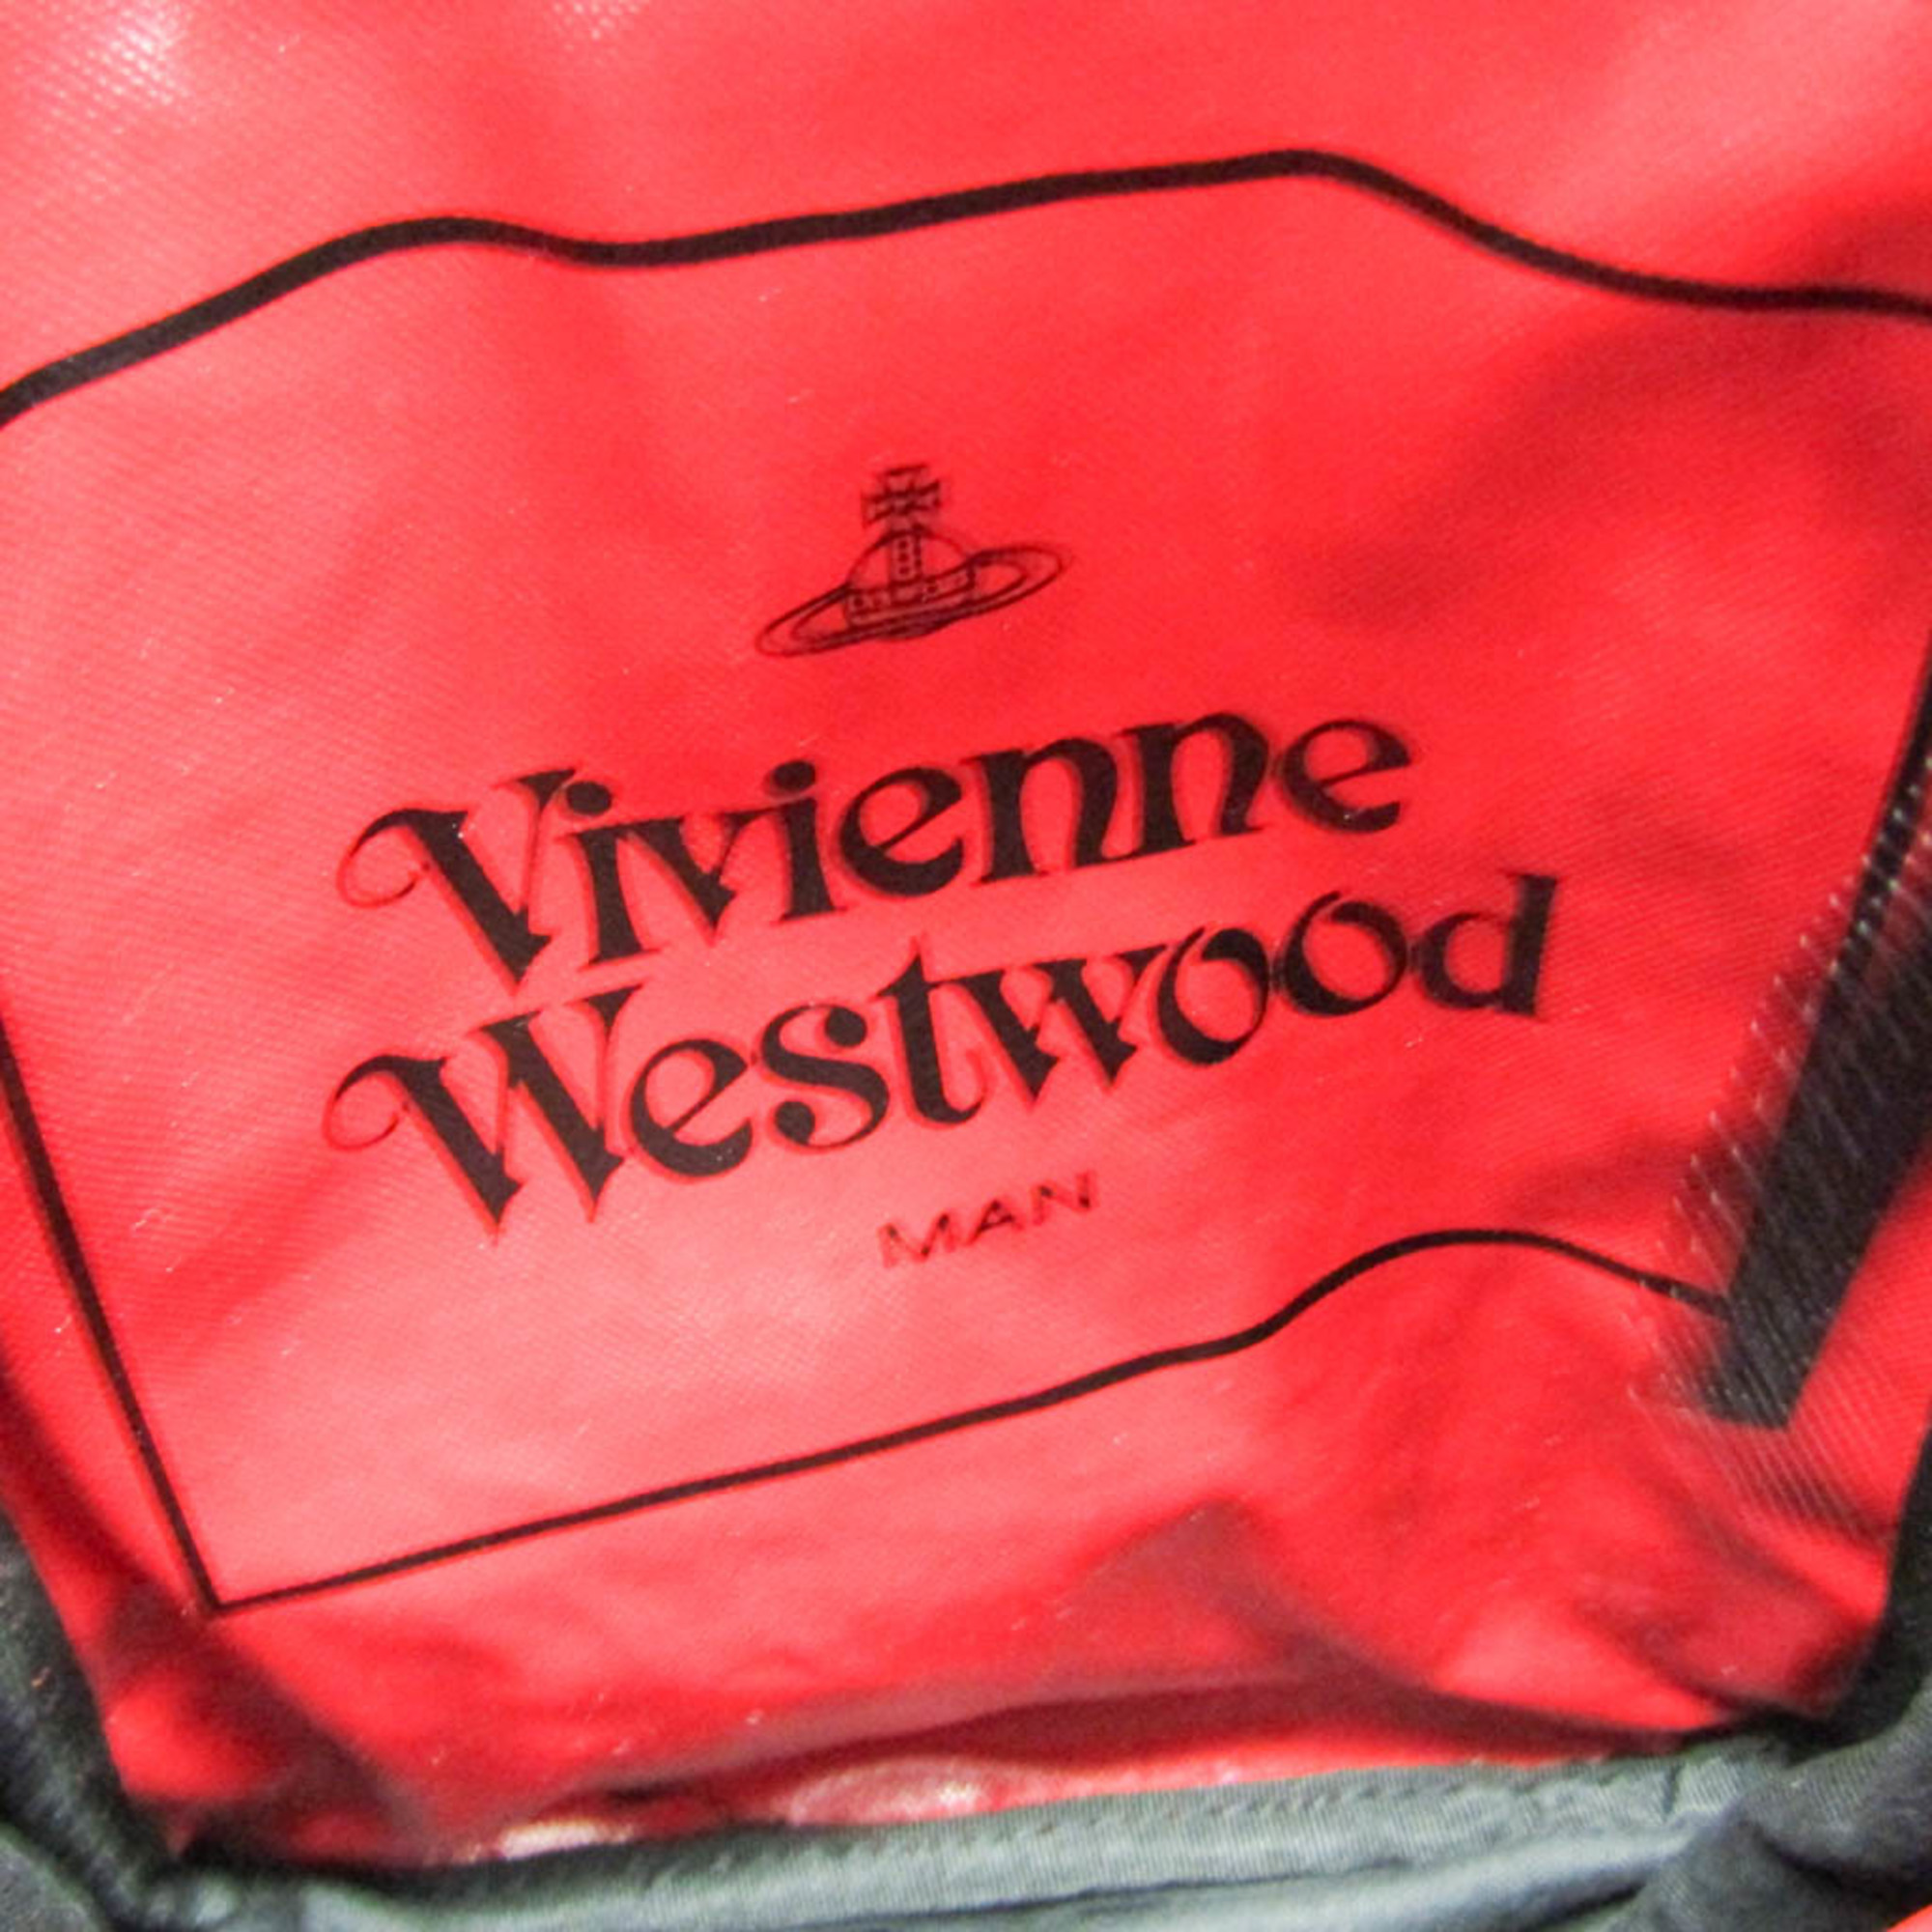 ヴィヴィアン・ウエストウッド(Vivienne Westwood) シードツリー VWM831 レディース,メンズ PVC ショルダーバッグ,ボディバッグ レッド